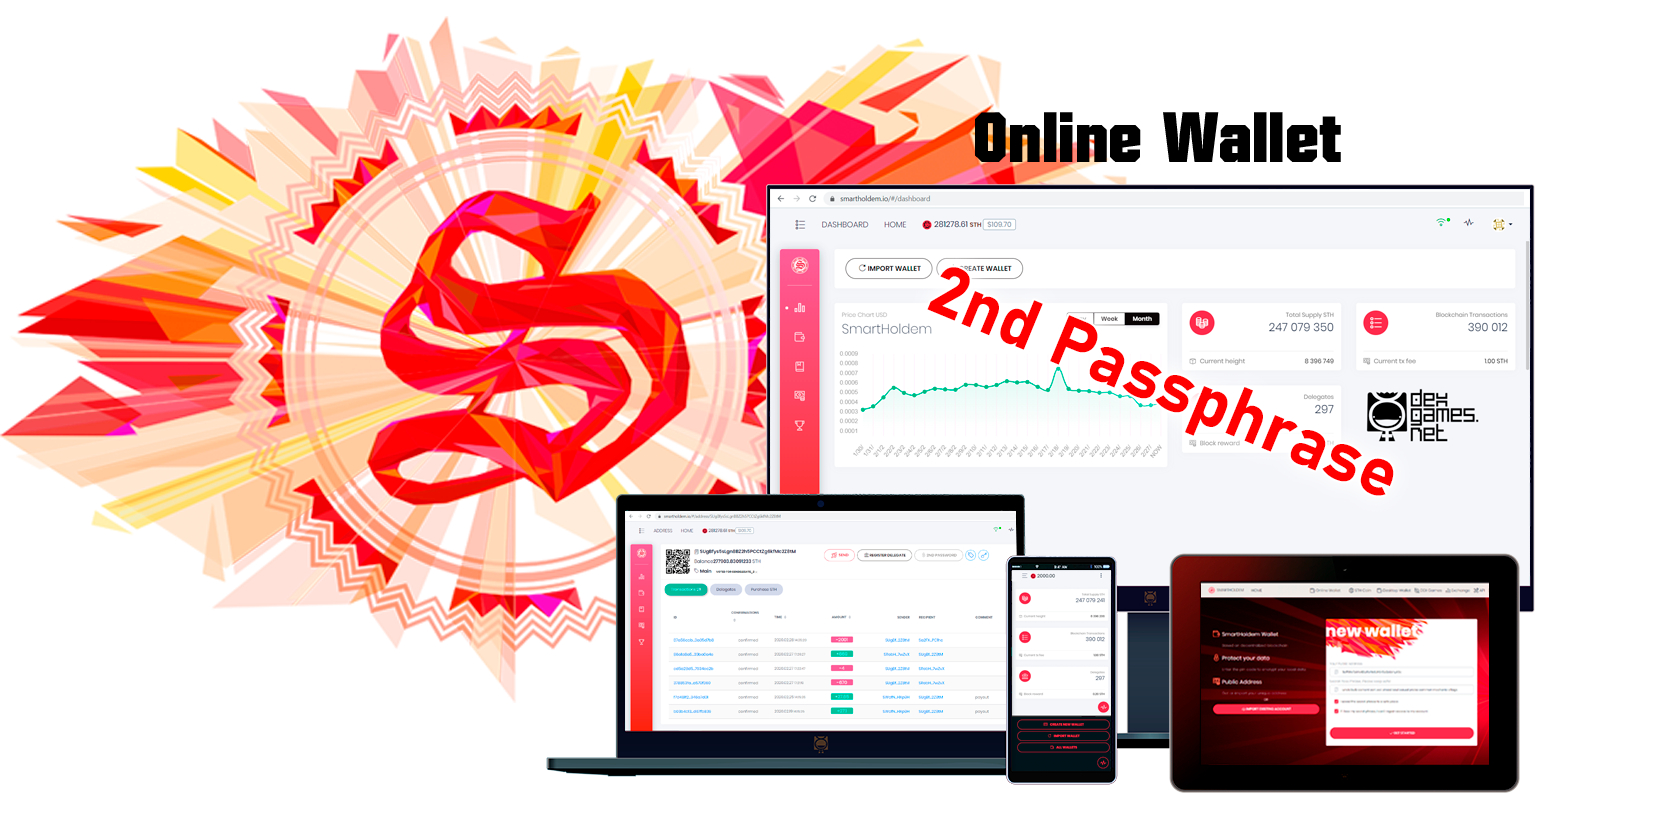 Online Wallet SmartHoldem - Advanced 2nd Passphrase security image